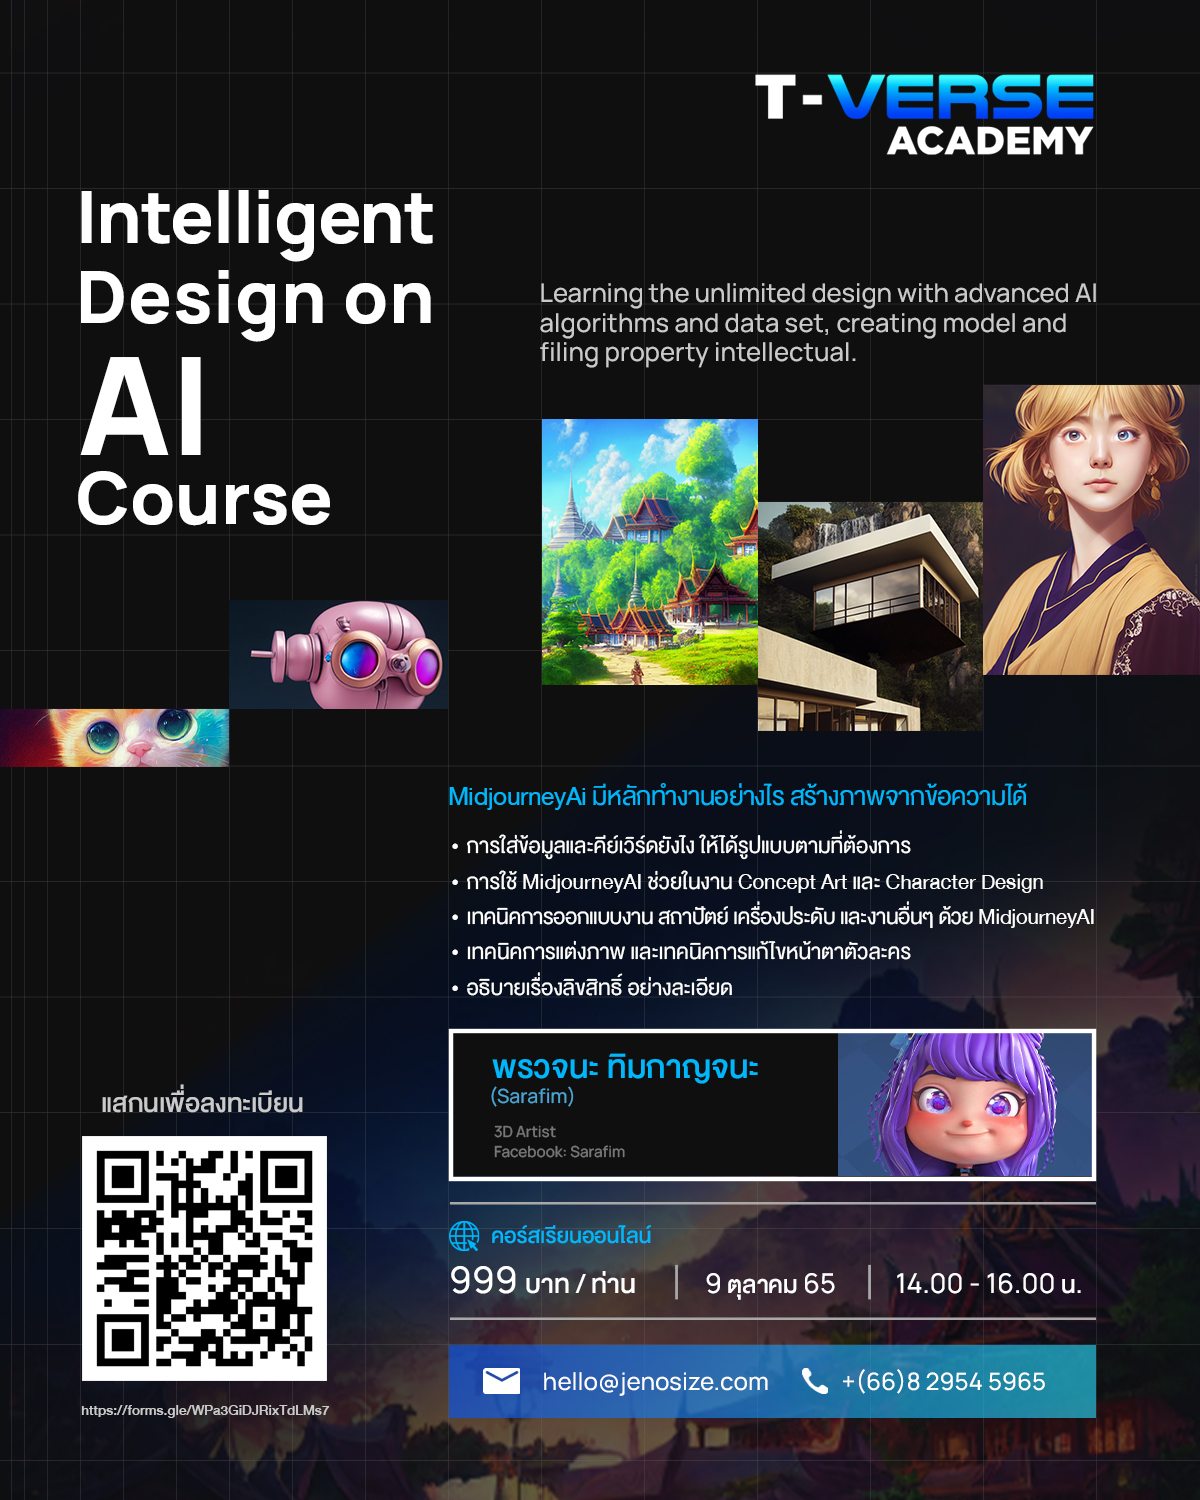 เจโนไซส์ ดิจิทัล กรุ๊ป โดย BRANDVERSE  เปิดตัว T-Verse Academy ประเดิมหลักสูตรแรก Intelligent Design on AI Course 